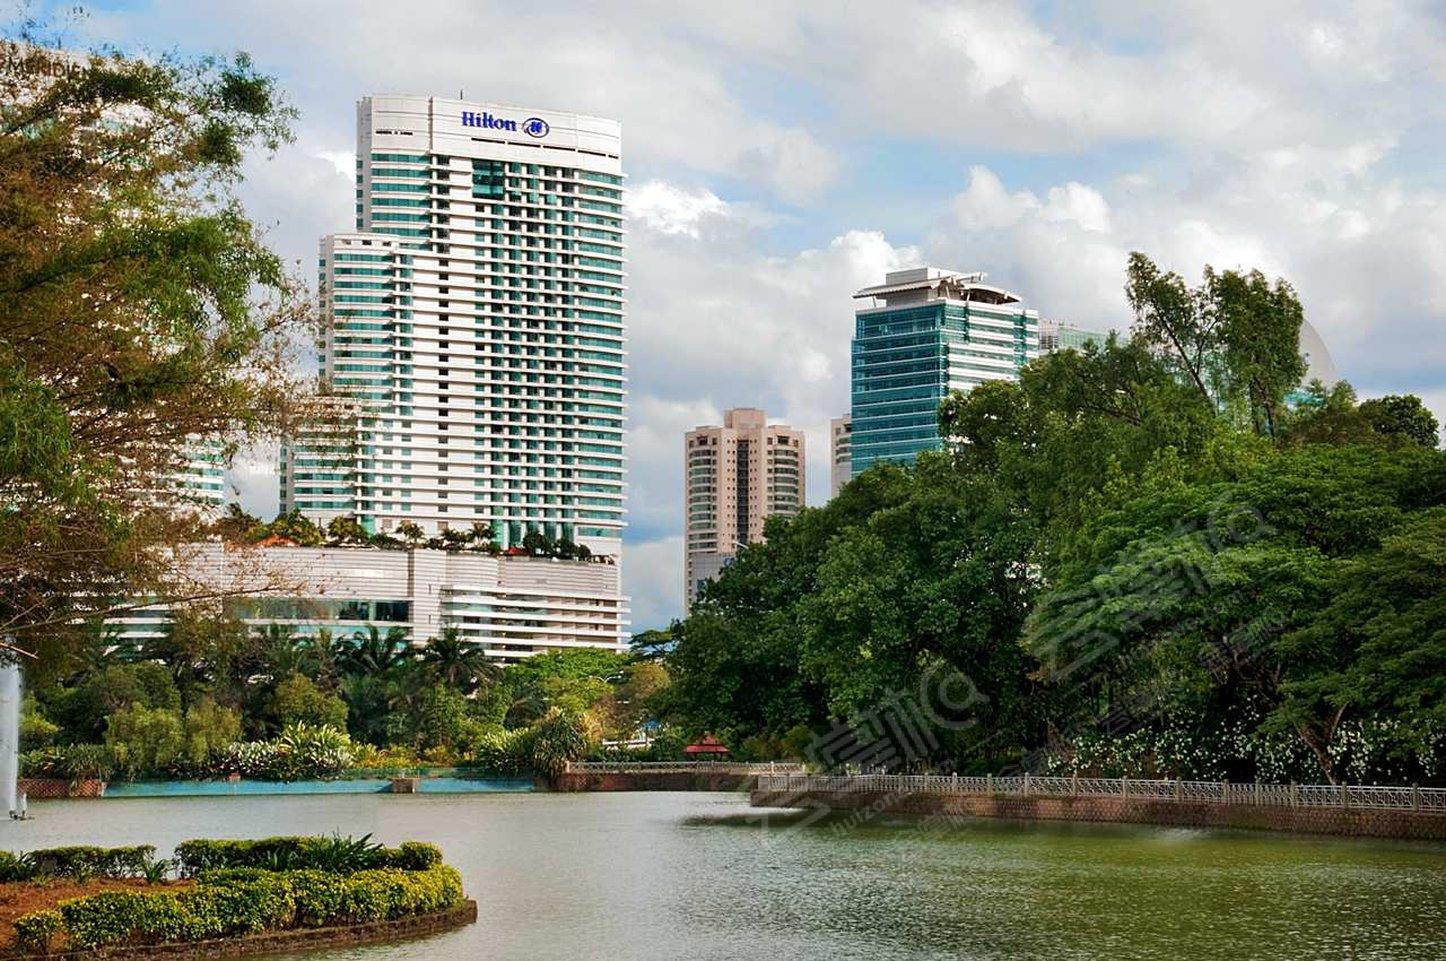 吉隆坡五星级酒店最大容纳400人的会议场地|吉隆坡希尔顿酒店(Hilton Kuala Lumpur)的价格与联系方式